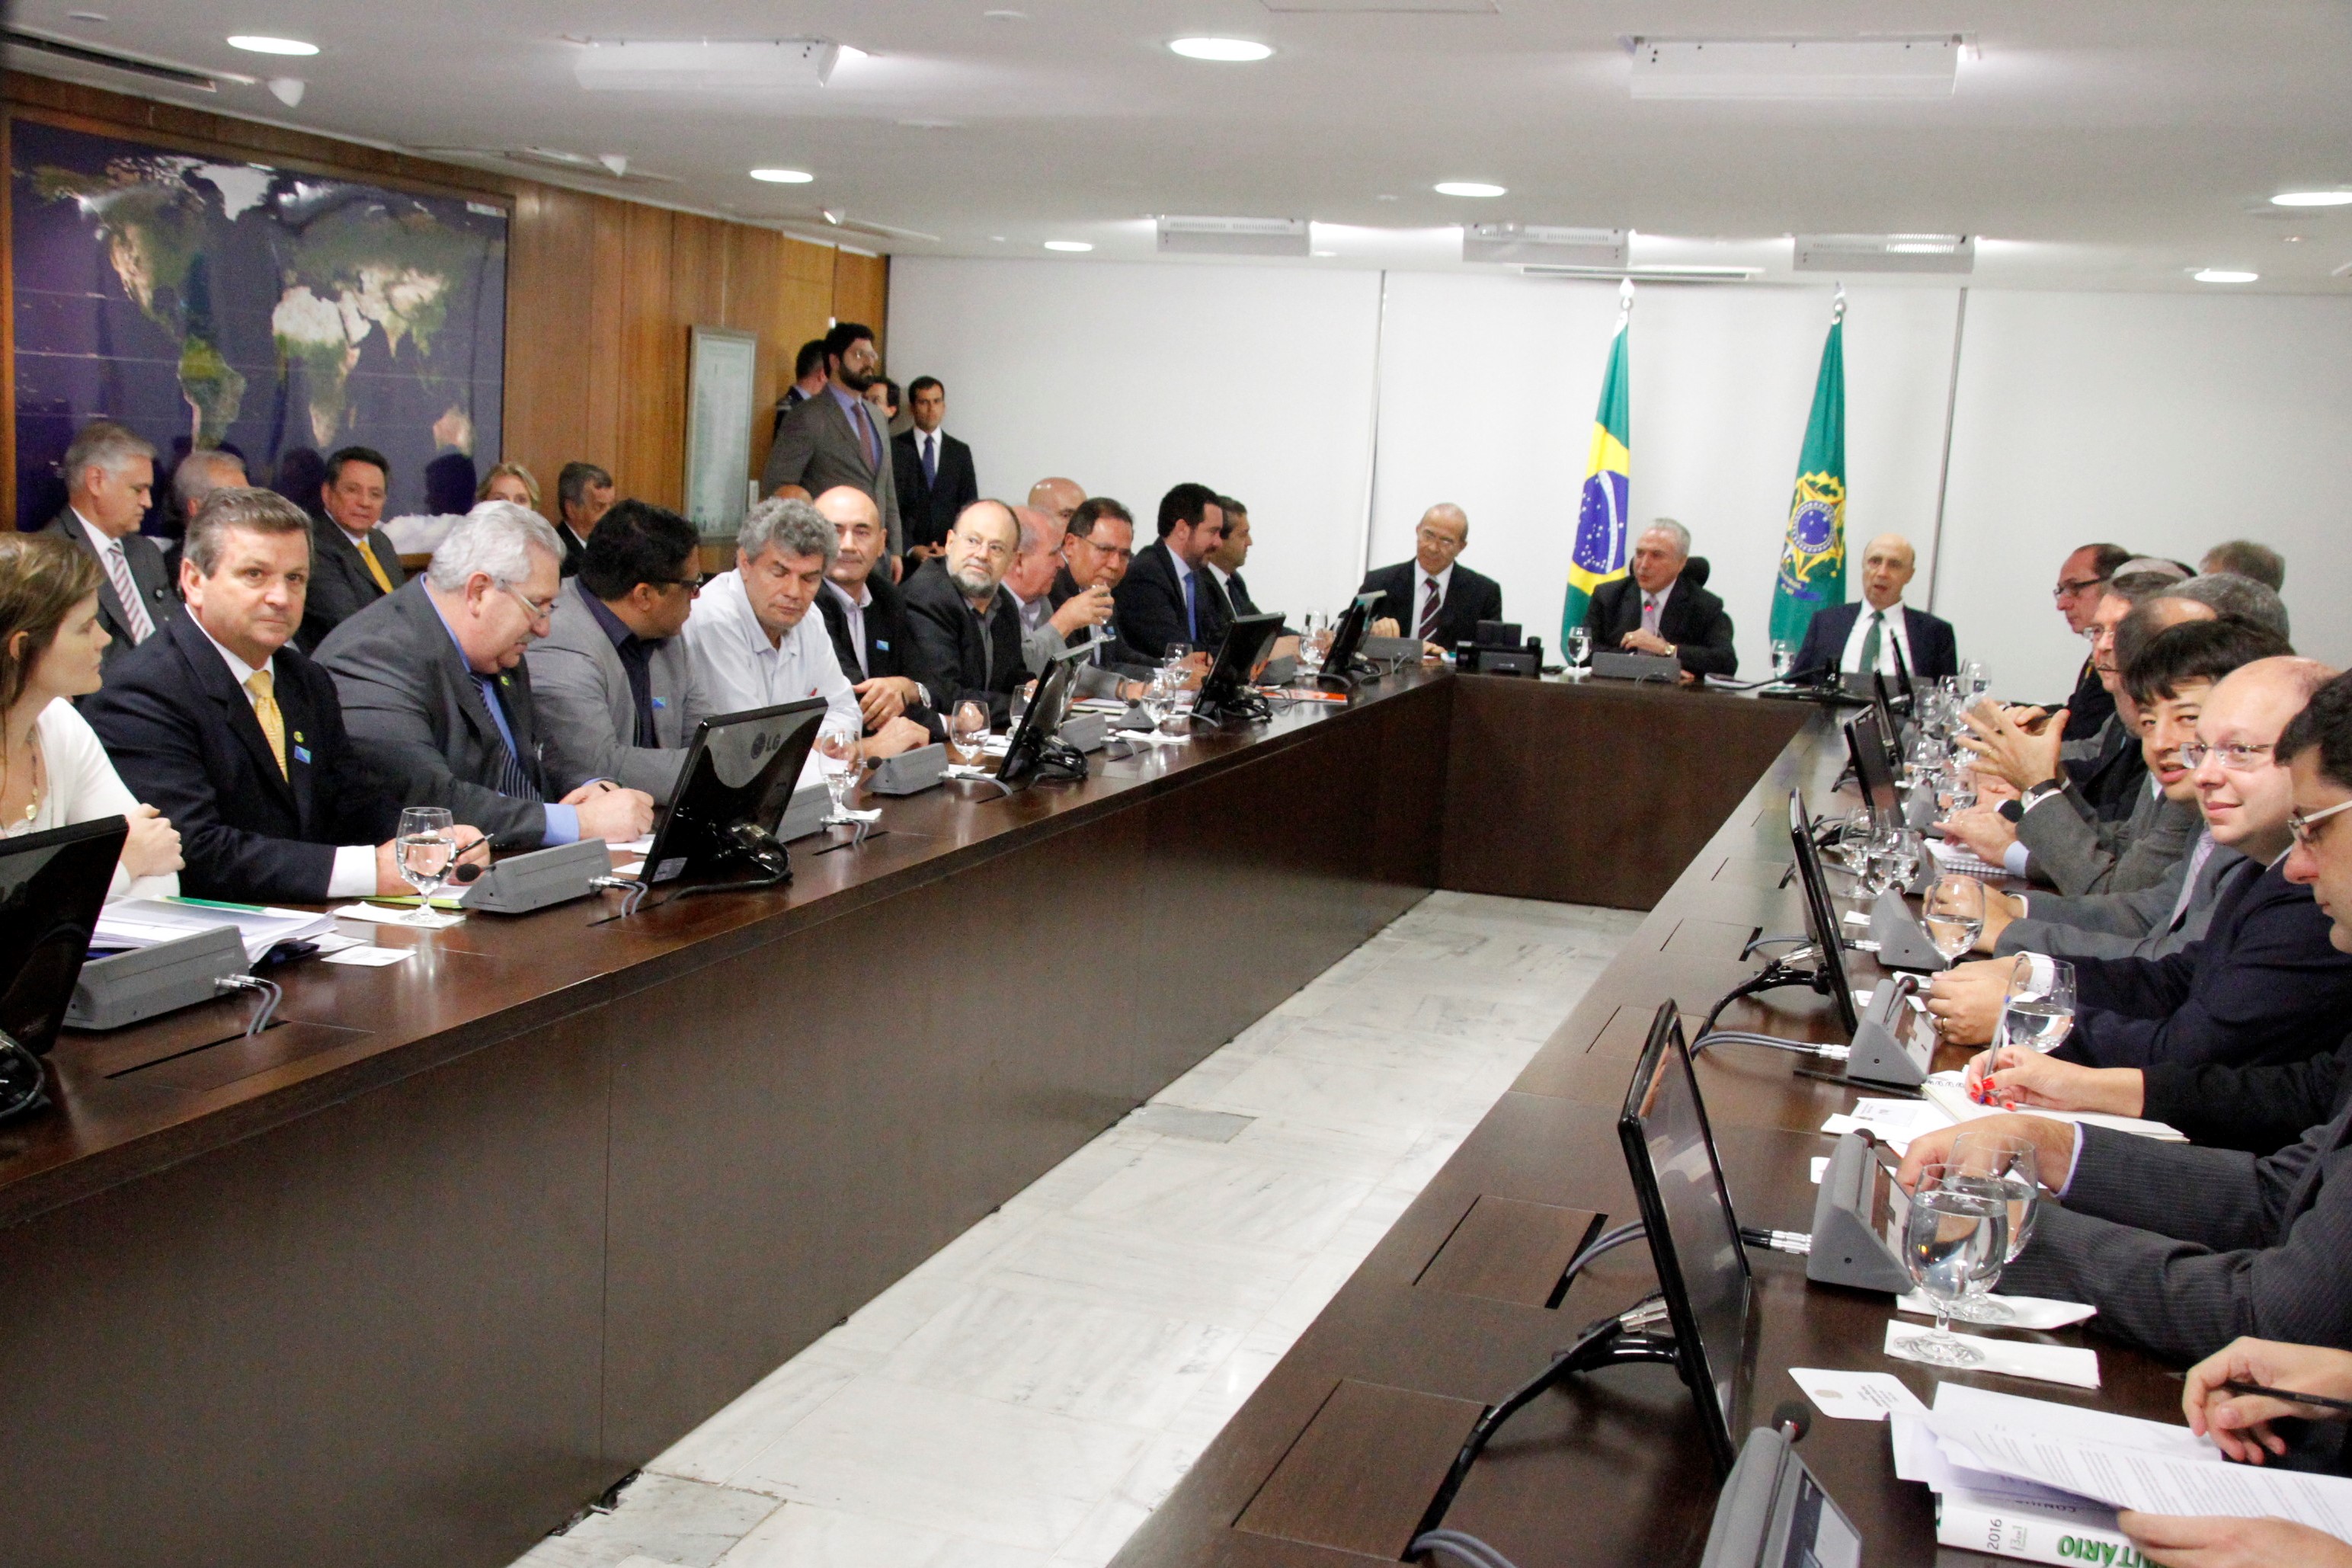 Reforma da Previdência é apresentada às Centrais em reunião no Planalto